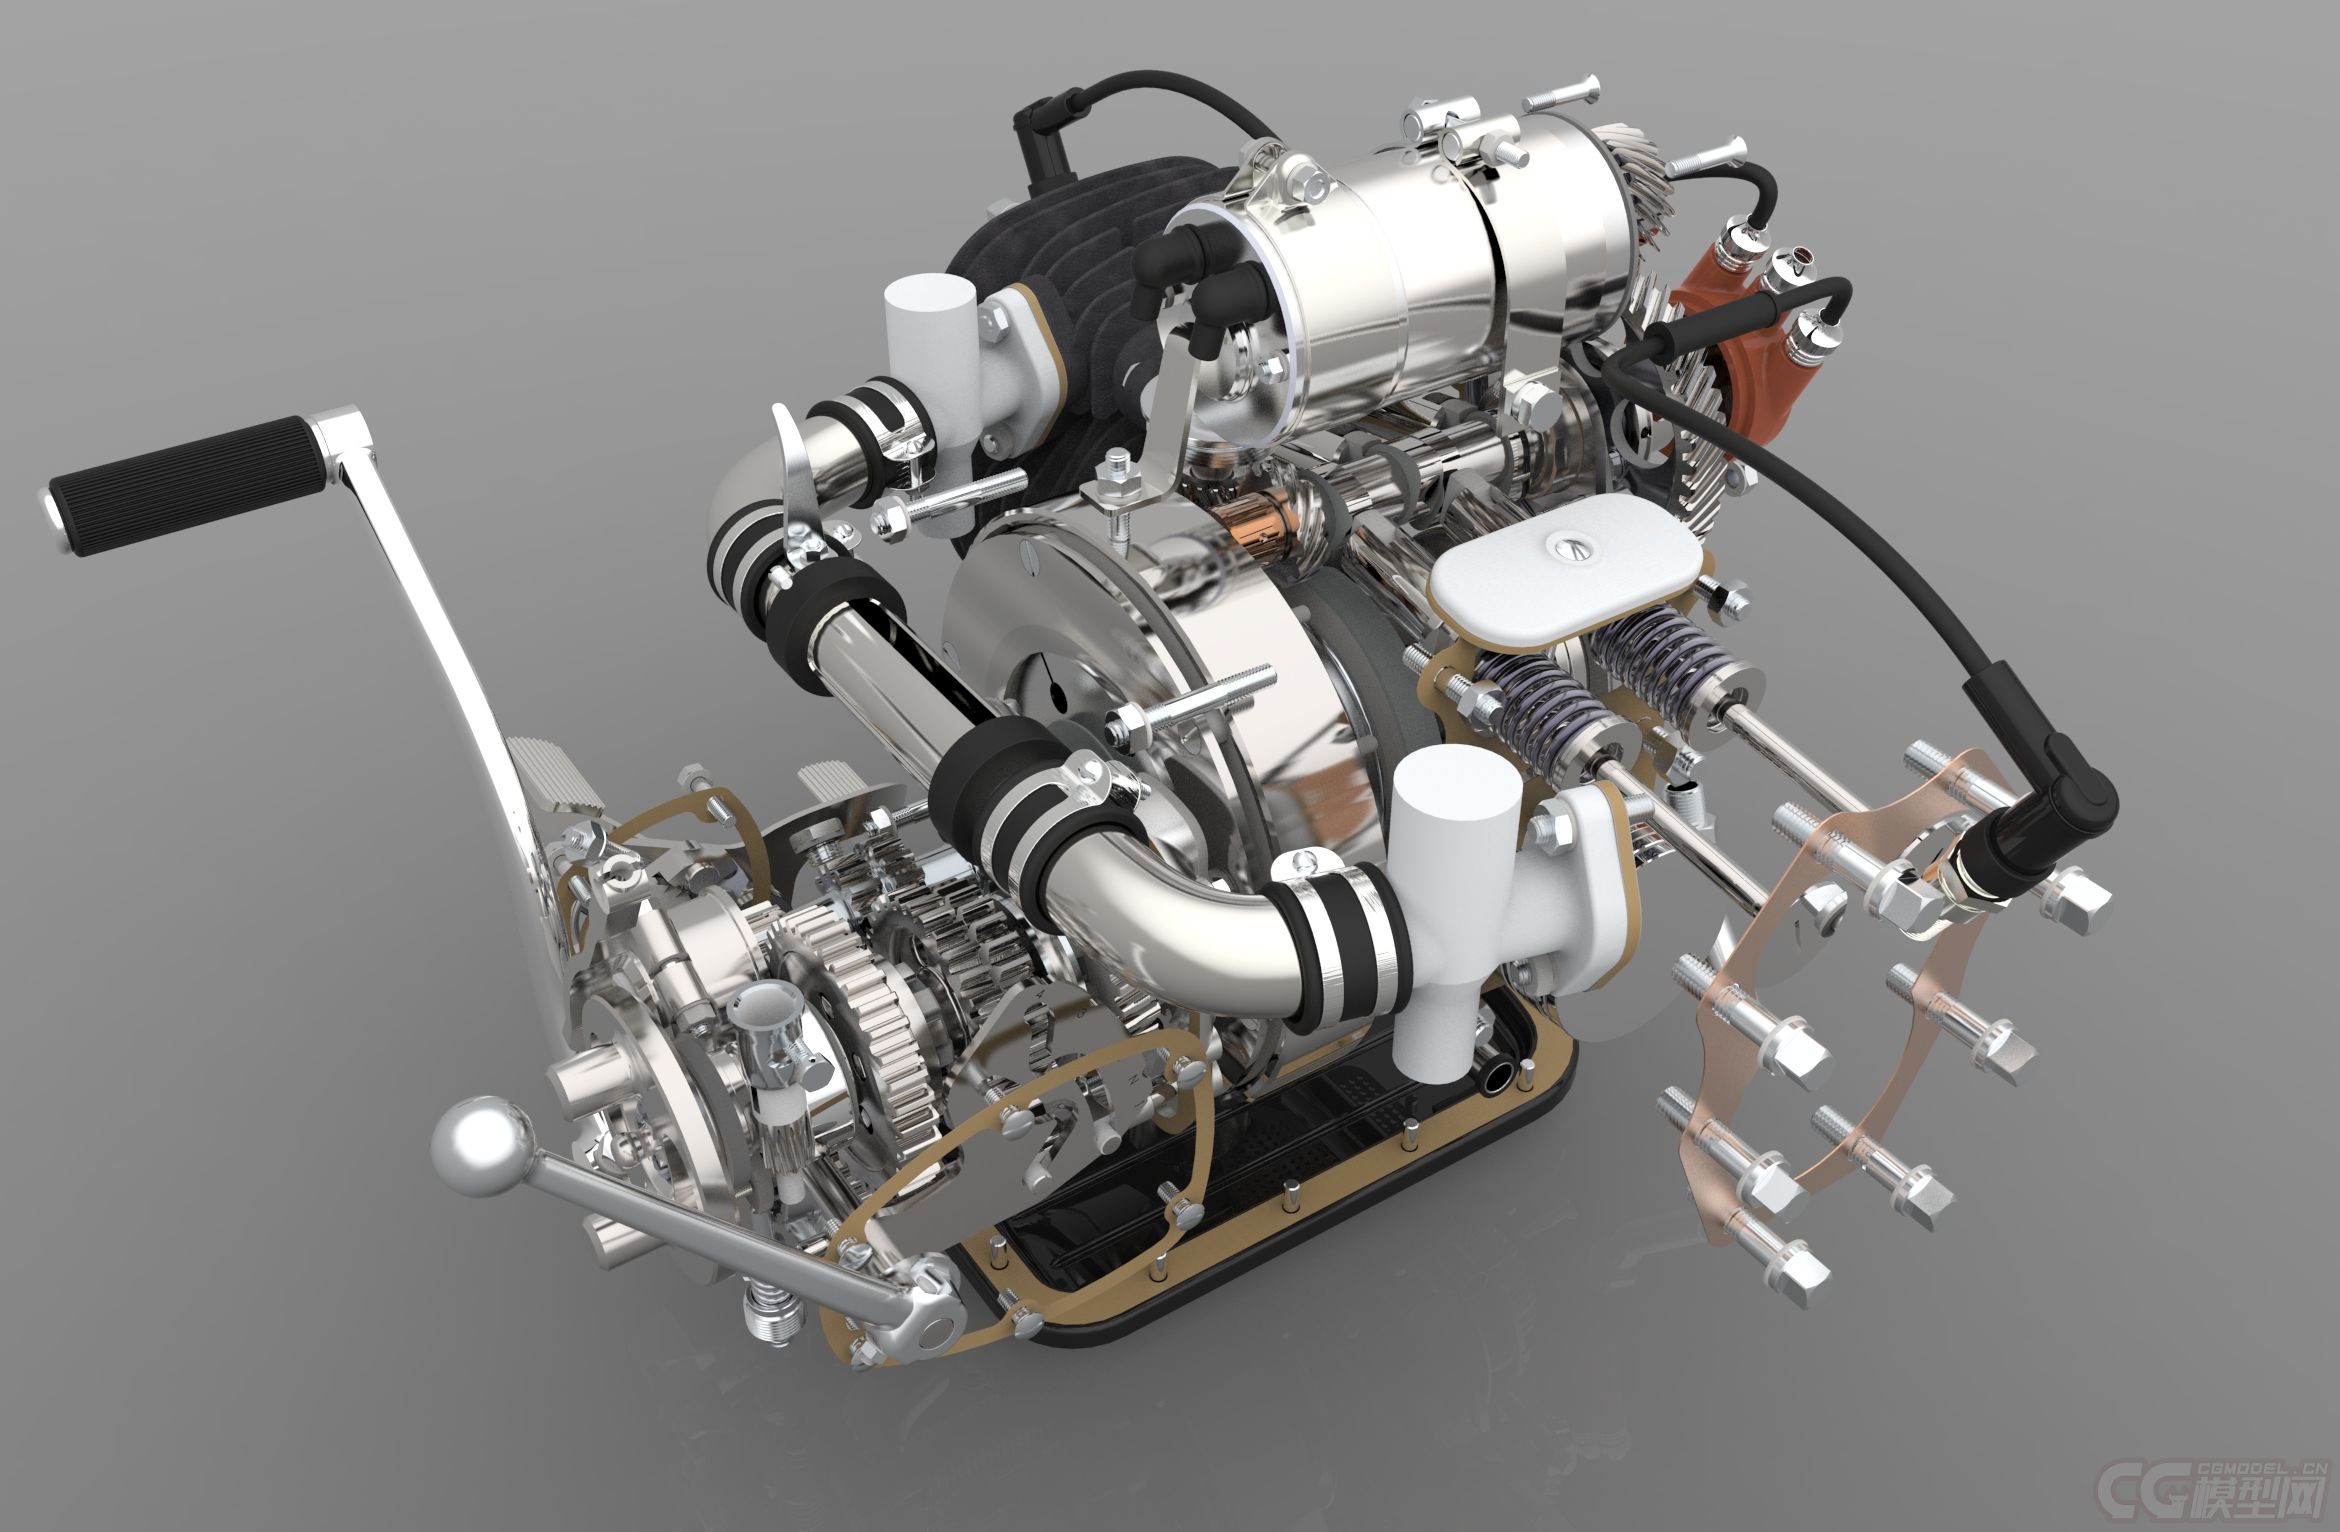 发动机模型,非常精细,内部结构完整,结构清晰可见